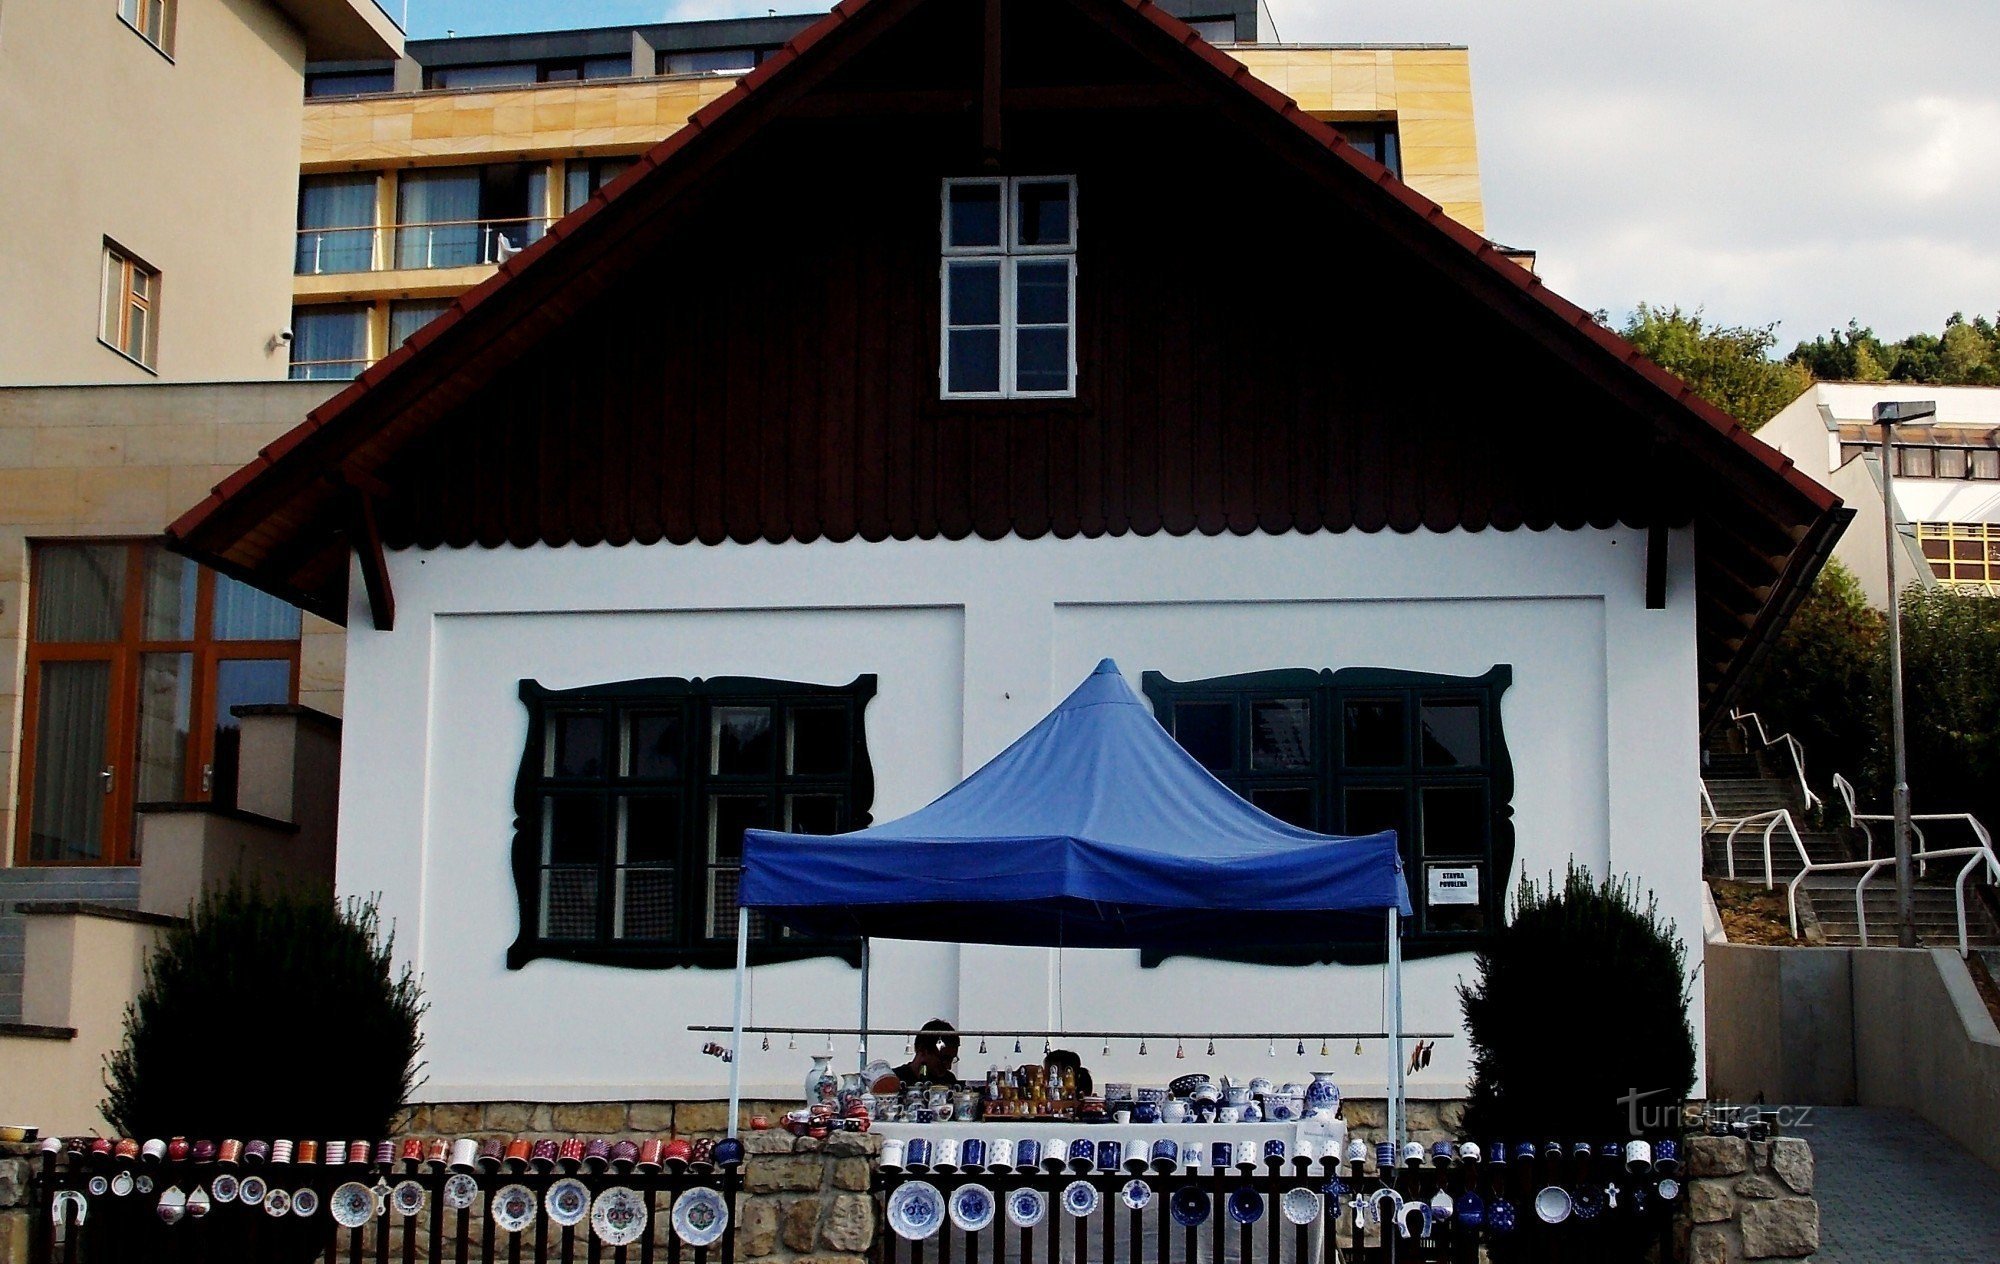 Cameră Moravian în inima orașului Luhačovice